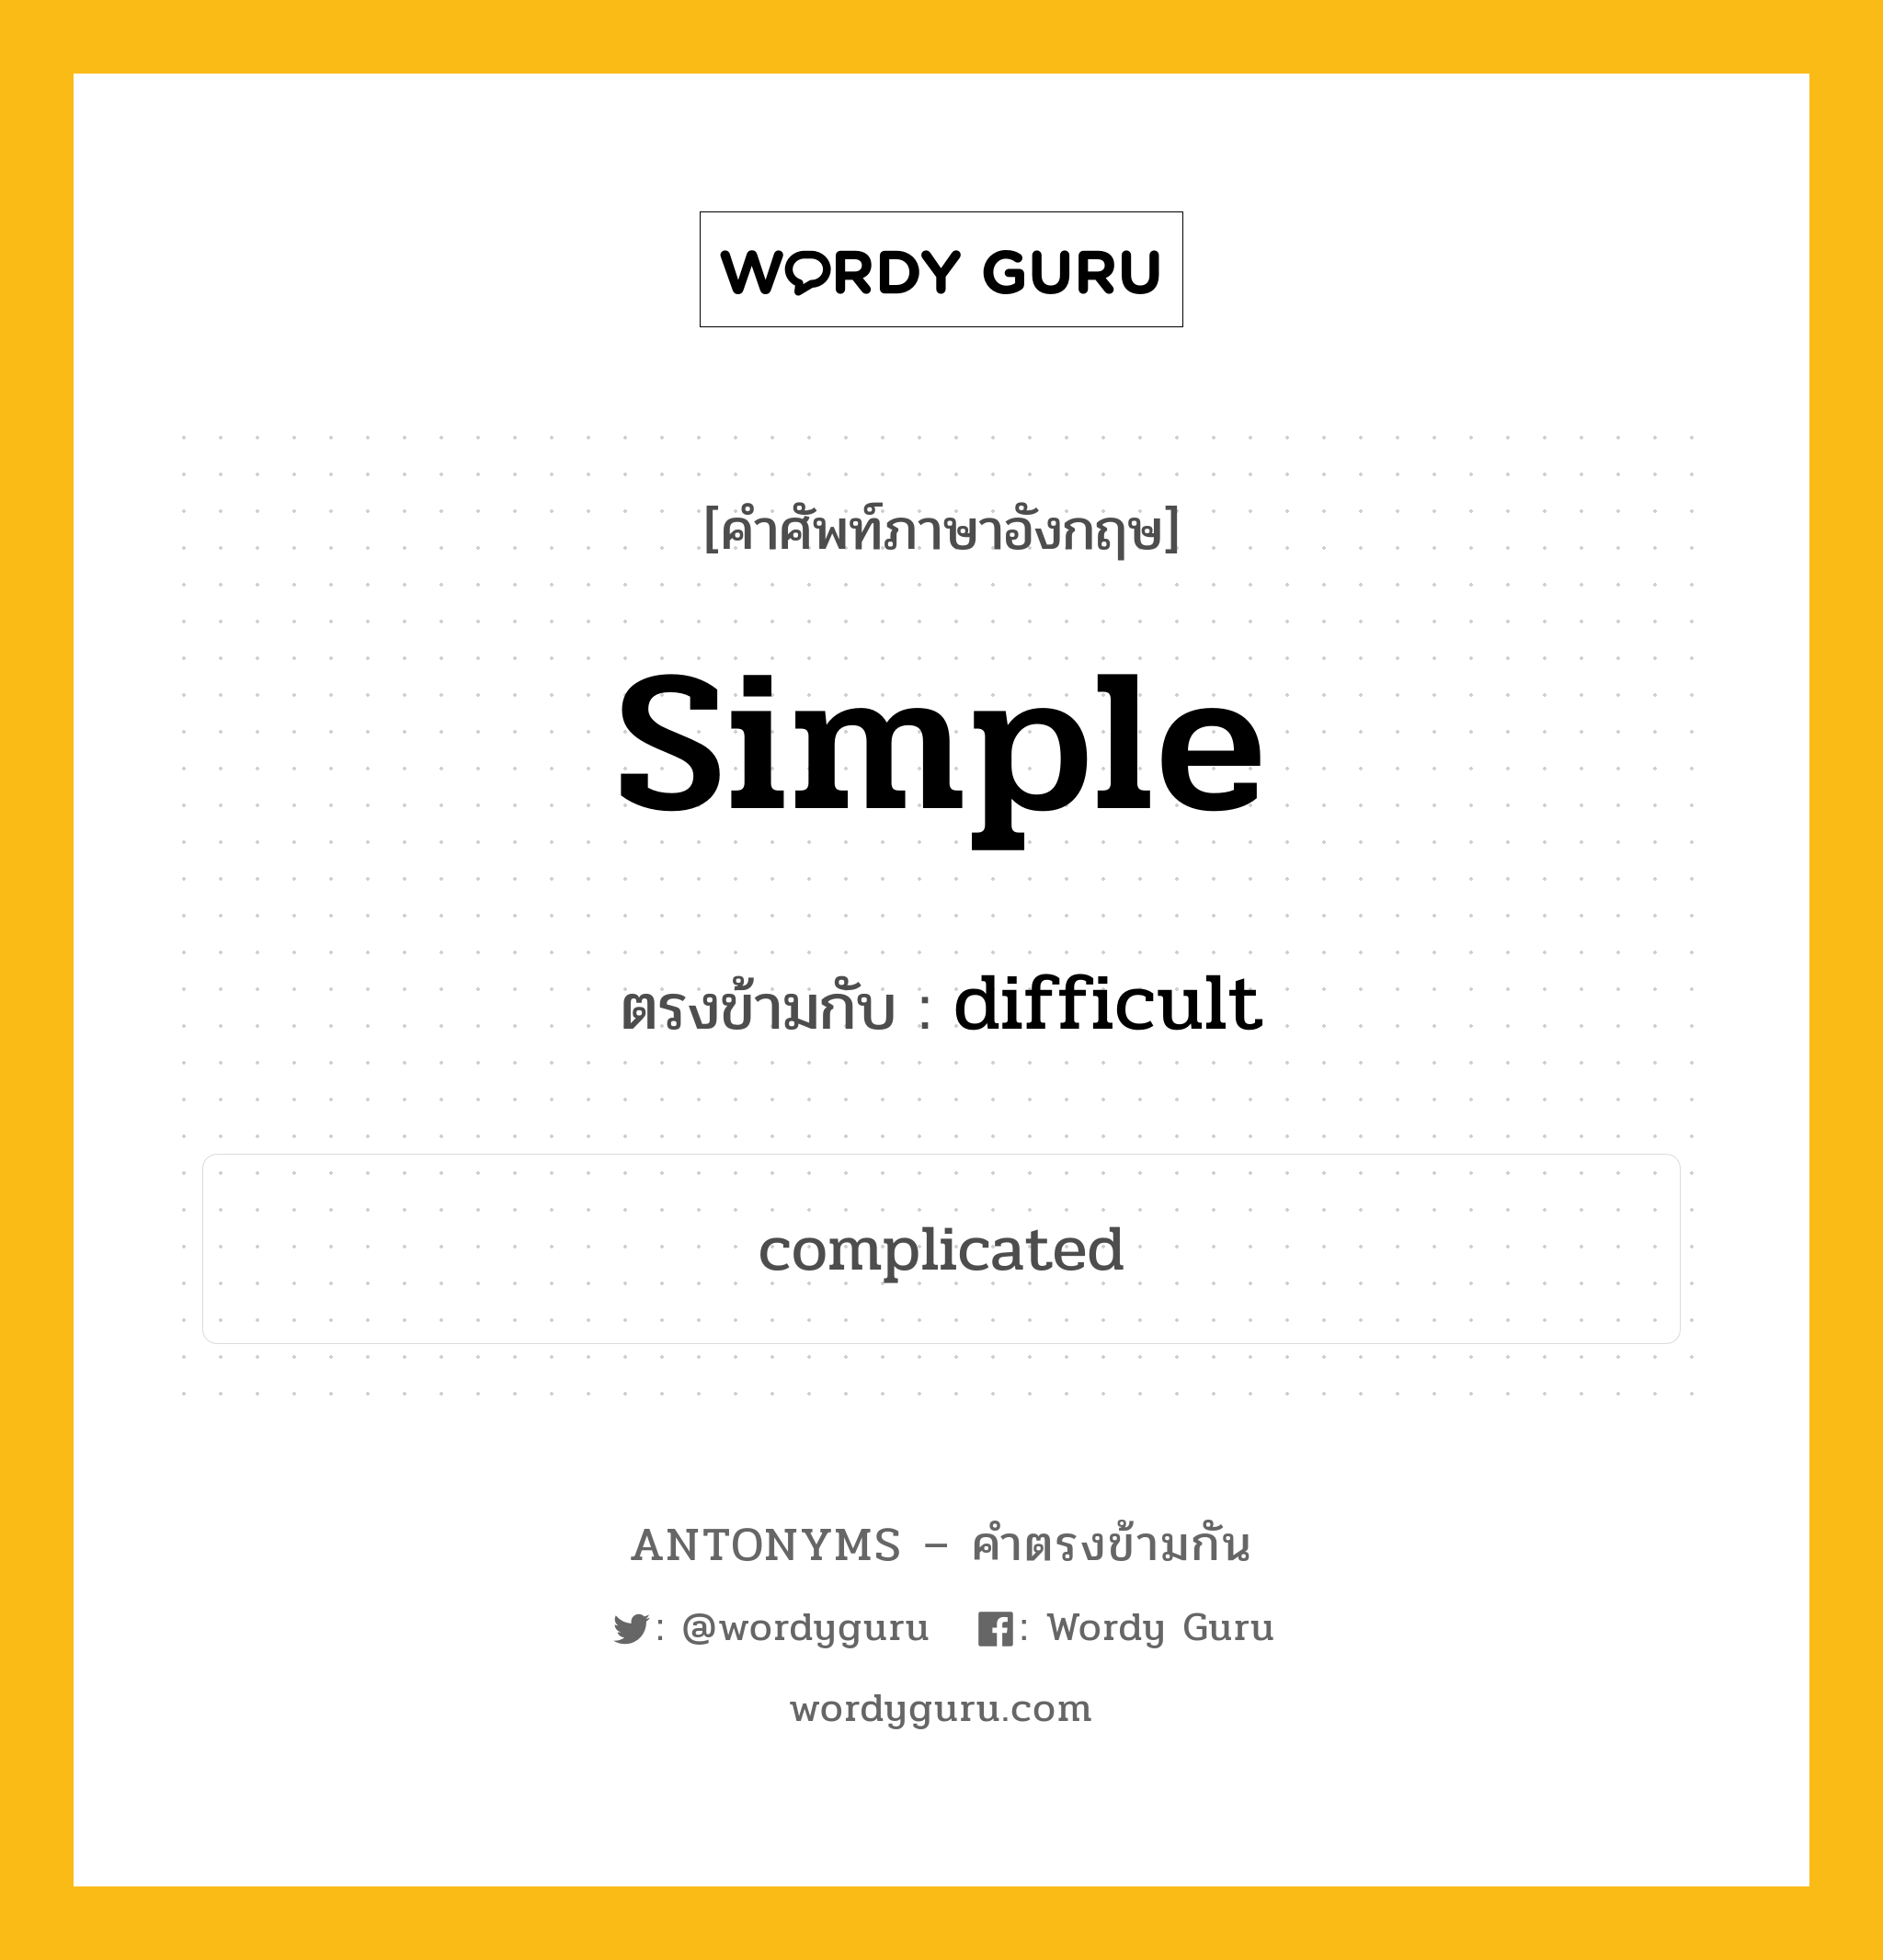 simple เป็นคำตรงข้ามกับคำไหนบ้าง?, คำศัพท์ภาษาอังกฤษ simple ตรงข้ามกับ difficult หมวด difficult